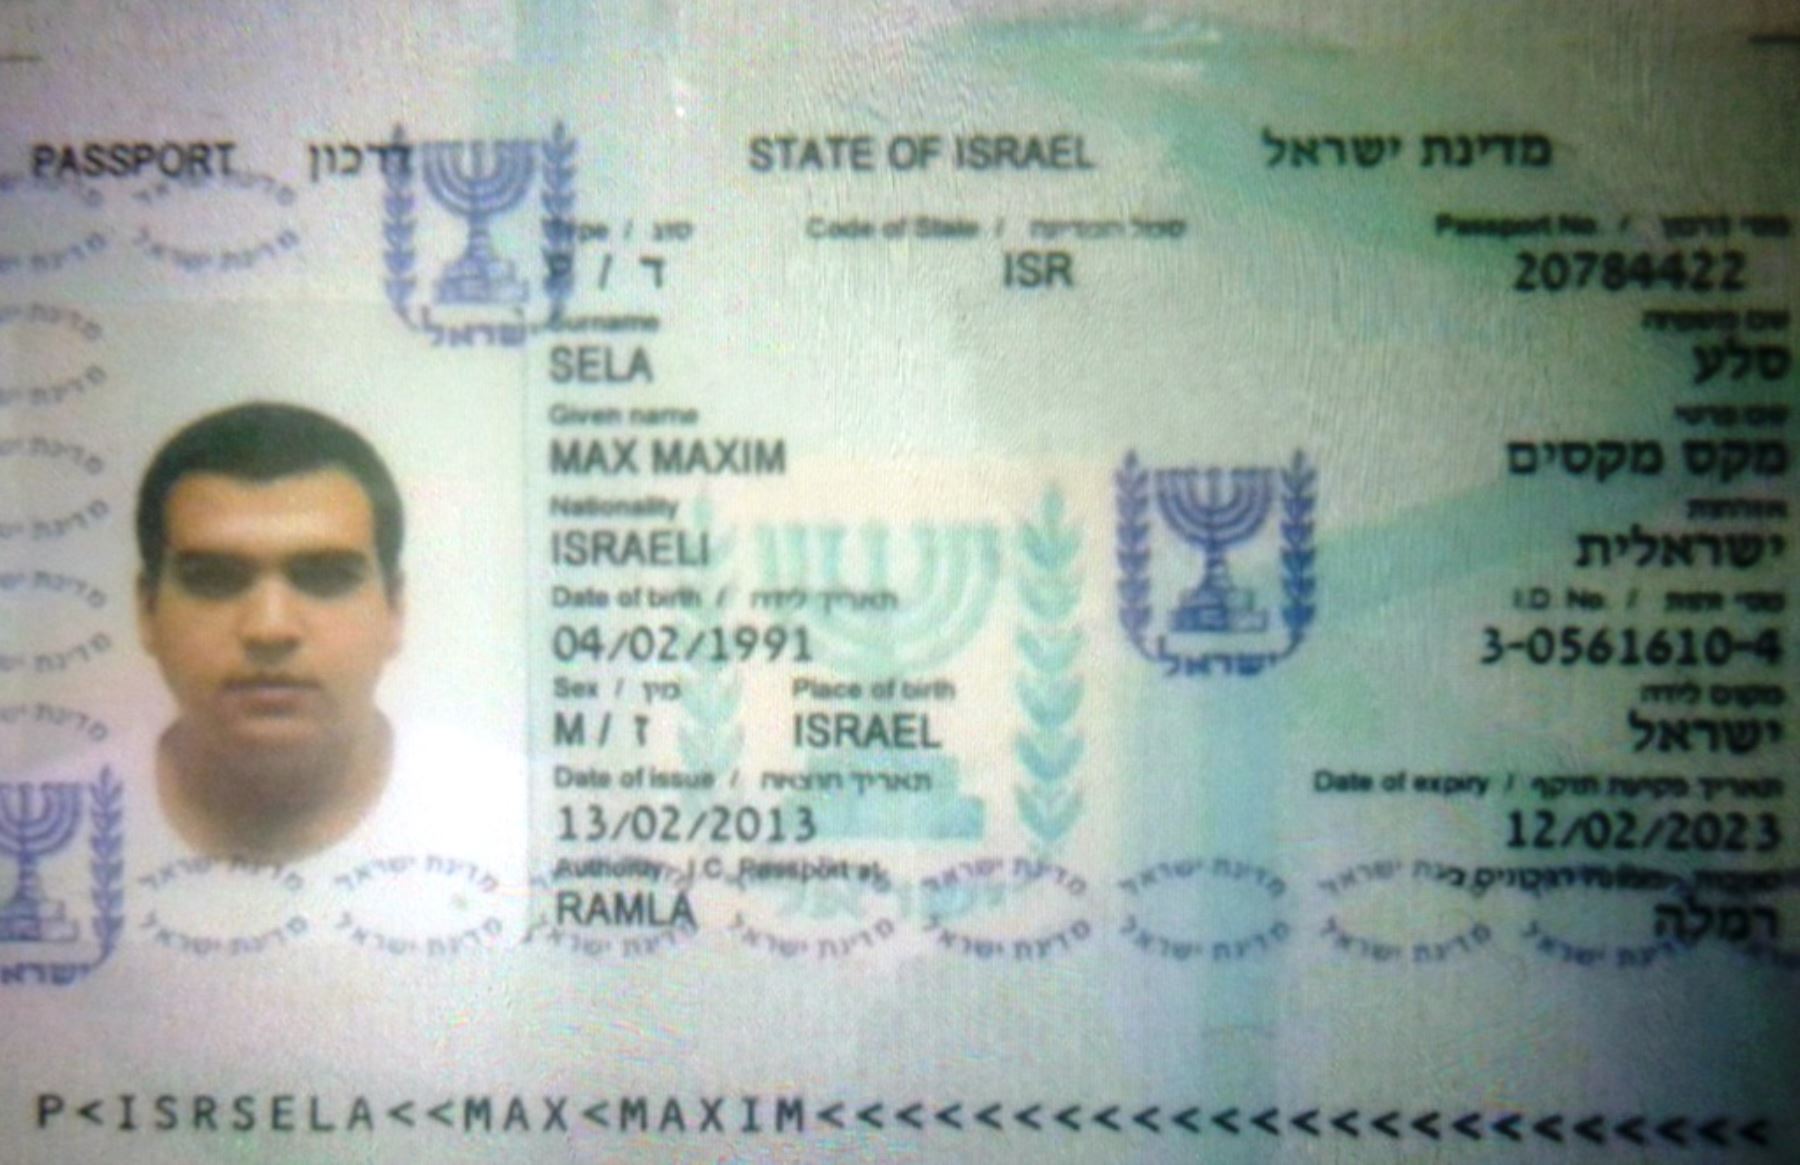 Pasaporte del ciudadano israelí, Max Maxin Sela (24), quien falleció la tarde del 8 de abril del 2015 en un accidente en el Cusco. Foto: ANDINA/Percy Hurtado.